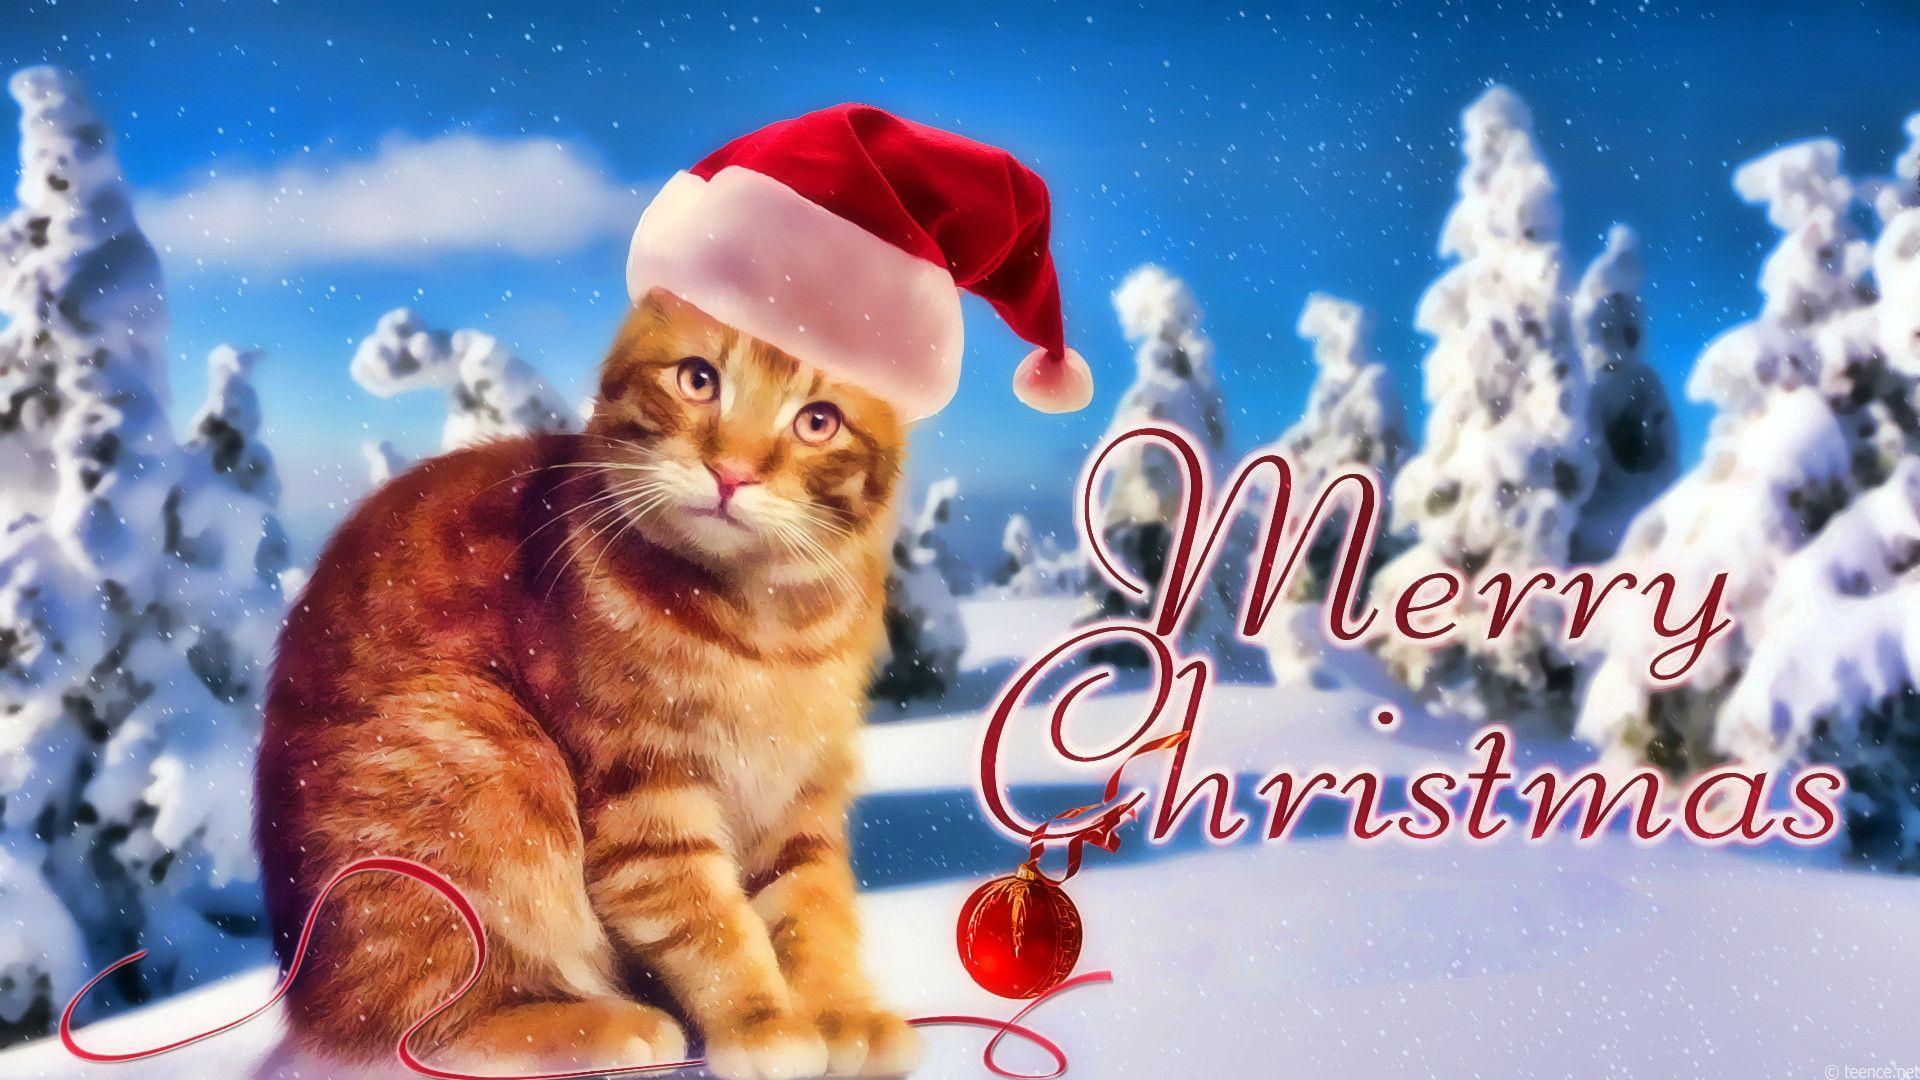 Hình nền Giáng sinh với hình ảnh chú mèo dễ thương sẽ khiến cho bất cứ ai cũng cảm thấy ấm áp và vui tươi hơn. Hãy xem ngay hình ảnh liên quan đến từ \